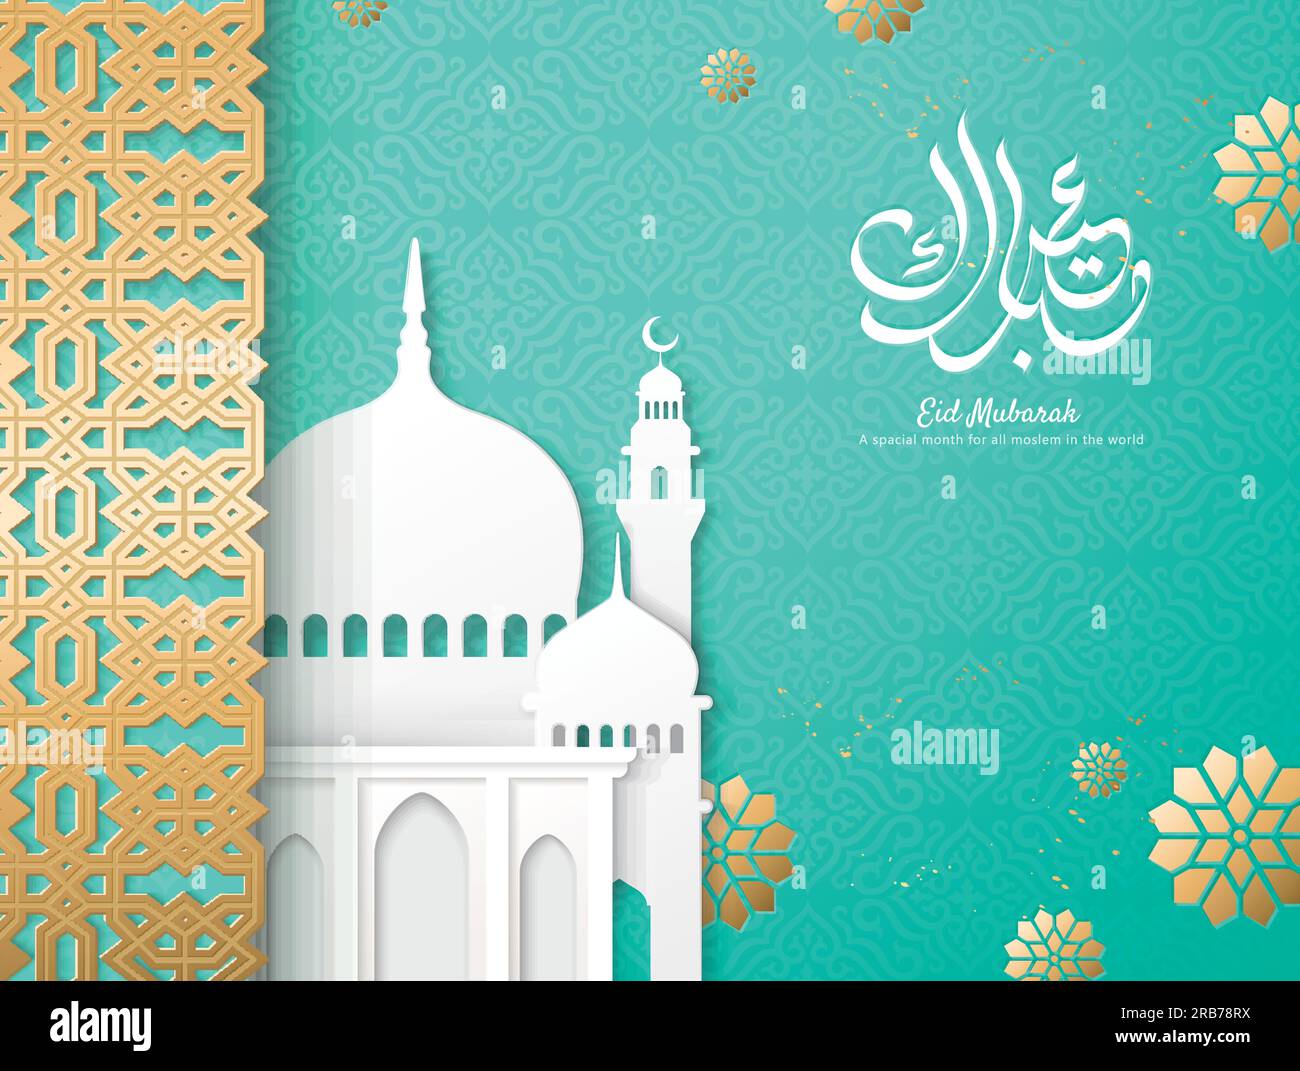 Calligraphie EID Moubarak avec cadre géométrique doré et mosquée en papier blanc sur fond turquoise Illustration de Vecteur